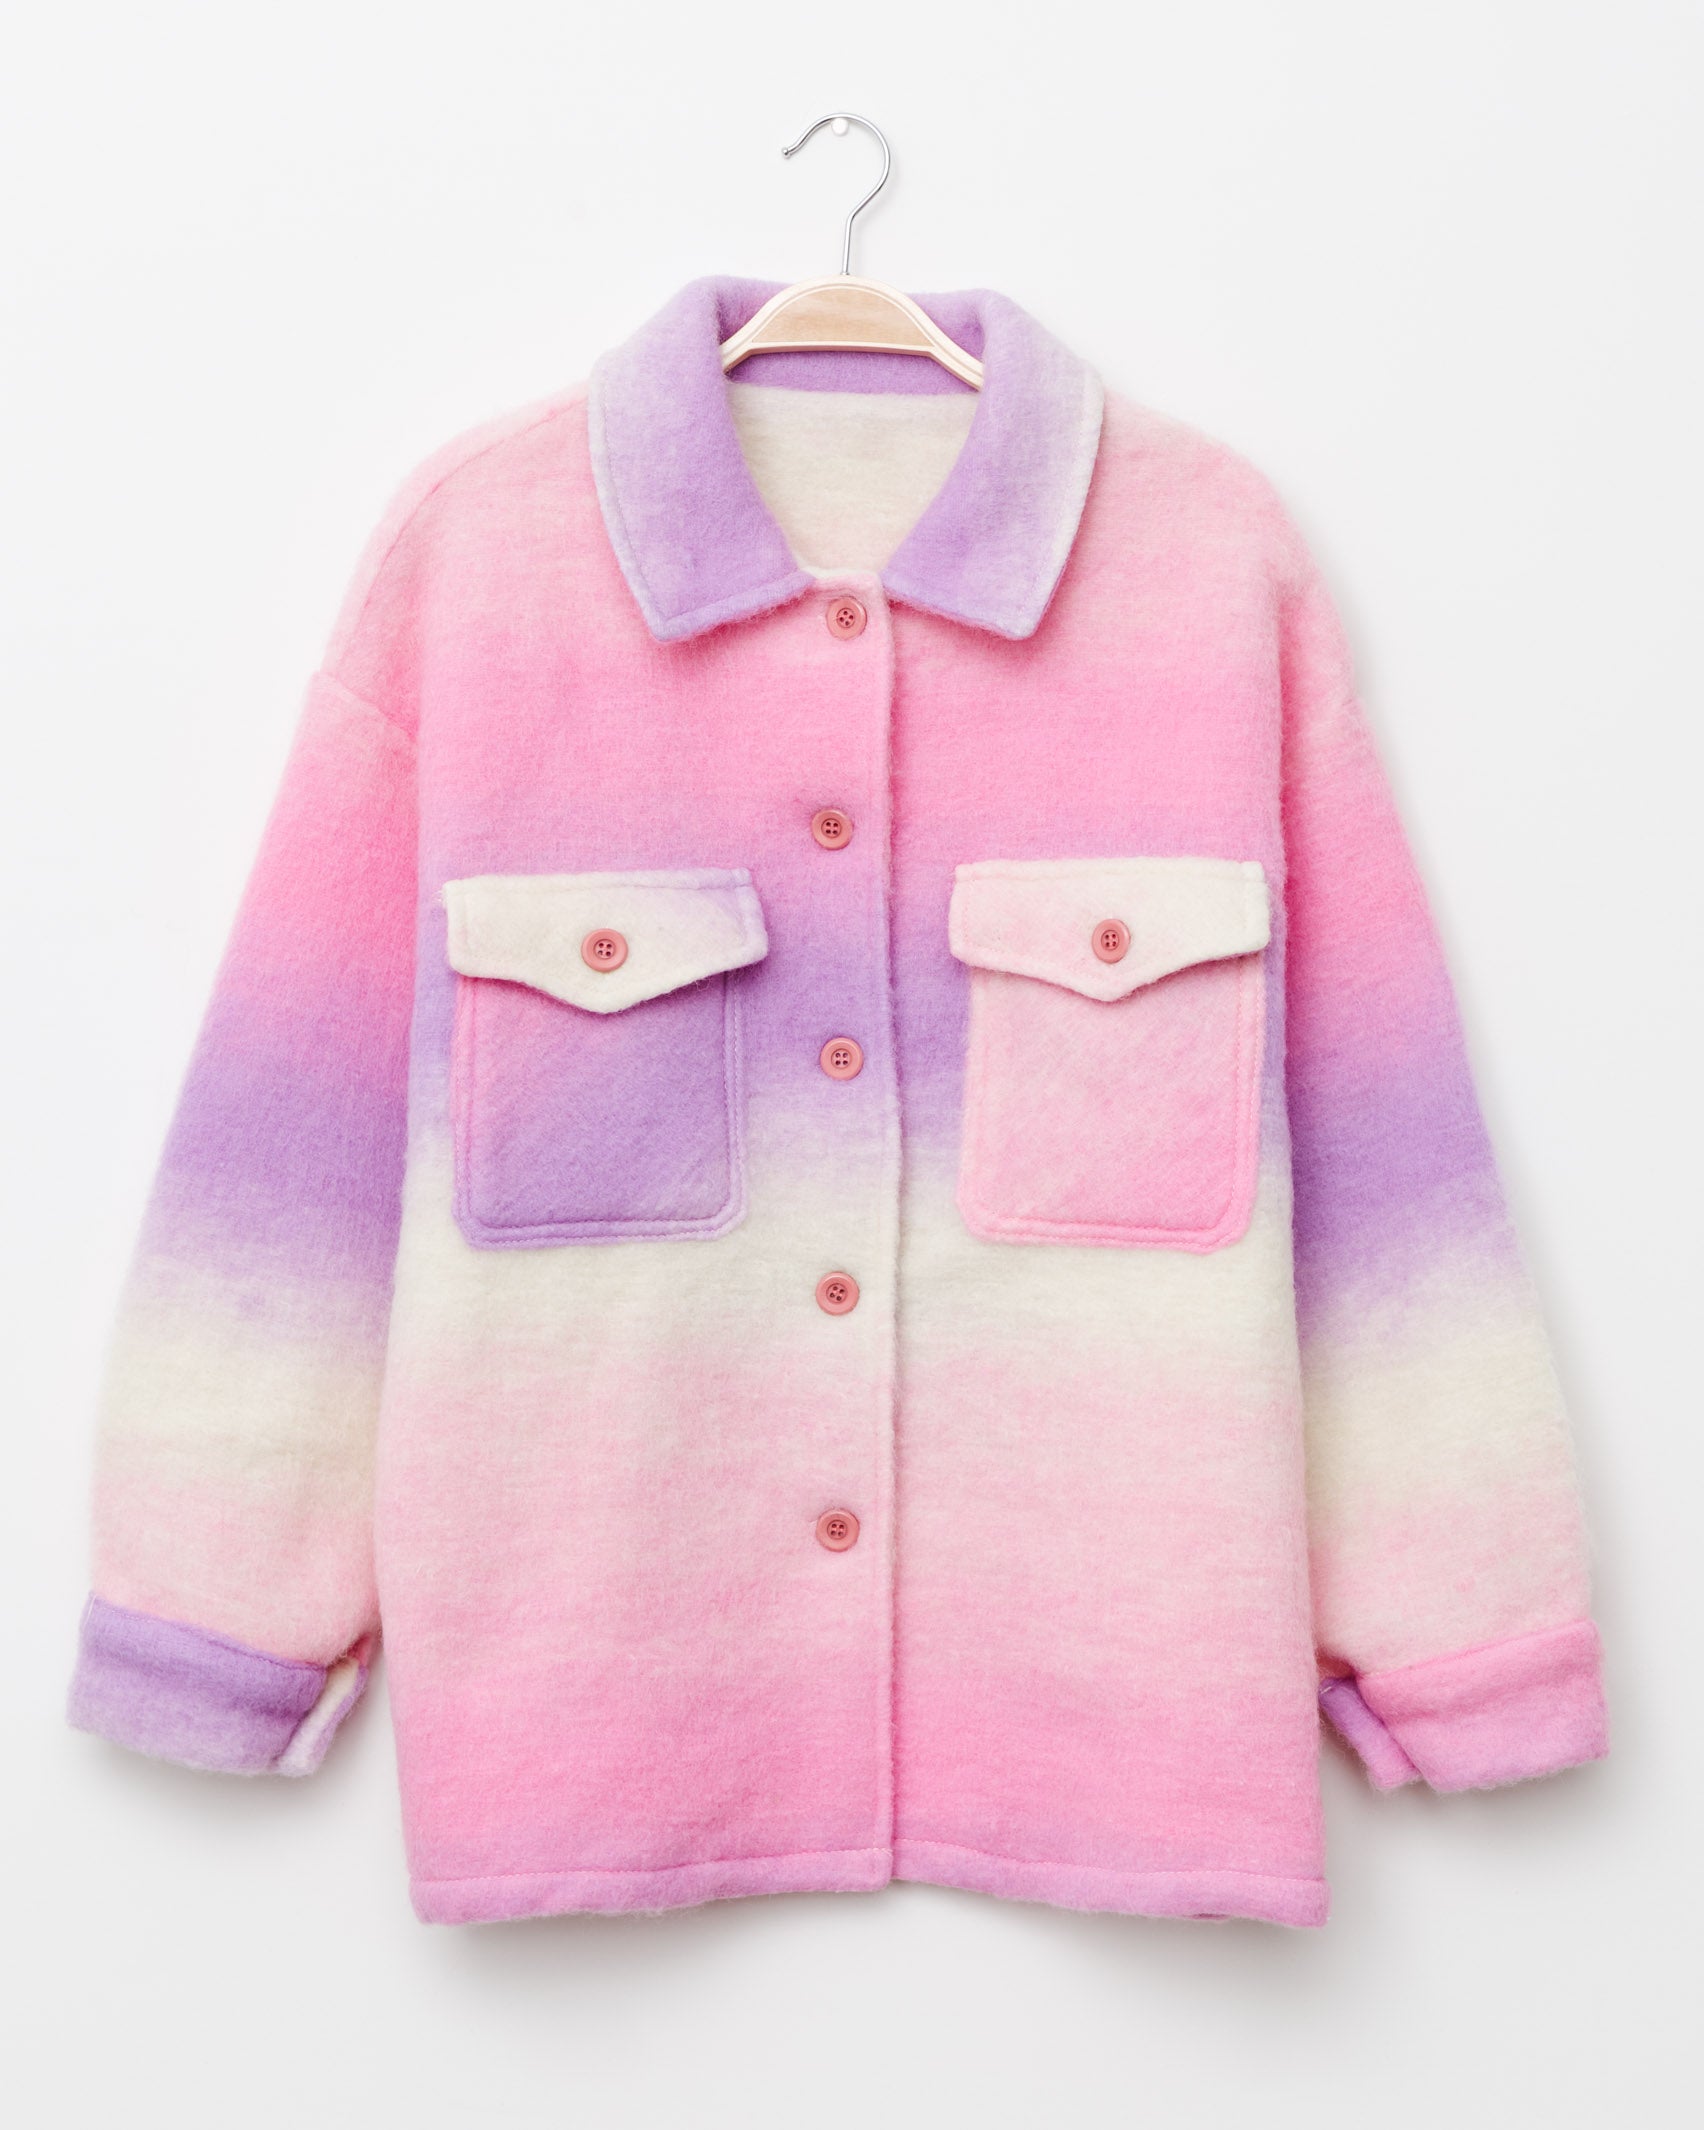 Oversized Hemdjacke mit Farbverlauf in Rosa - Broke + Schön#farbe_lilac